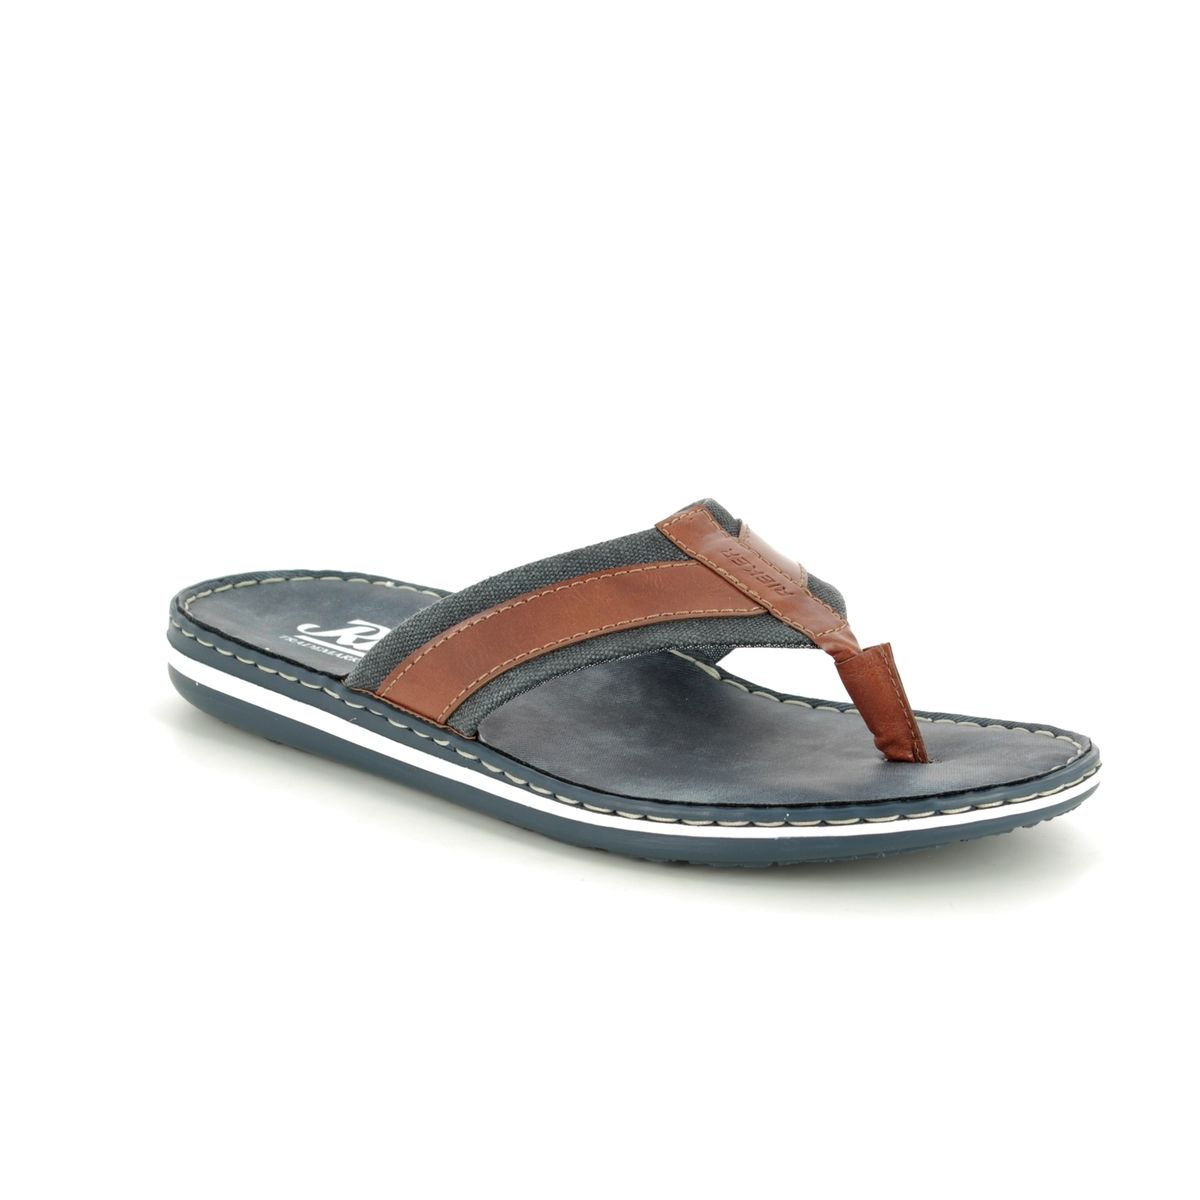 Rieker 21095-24 sandals